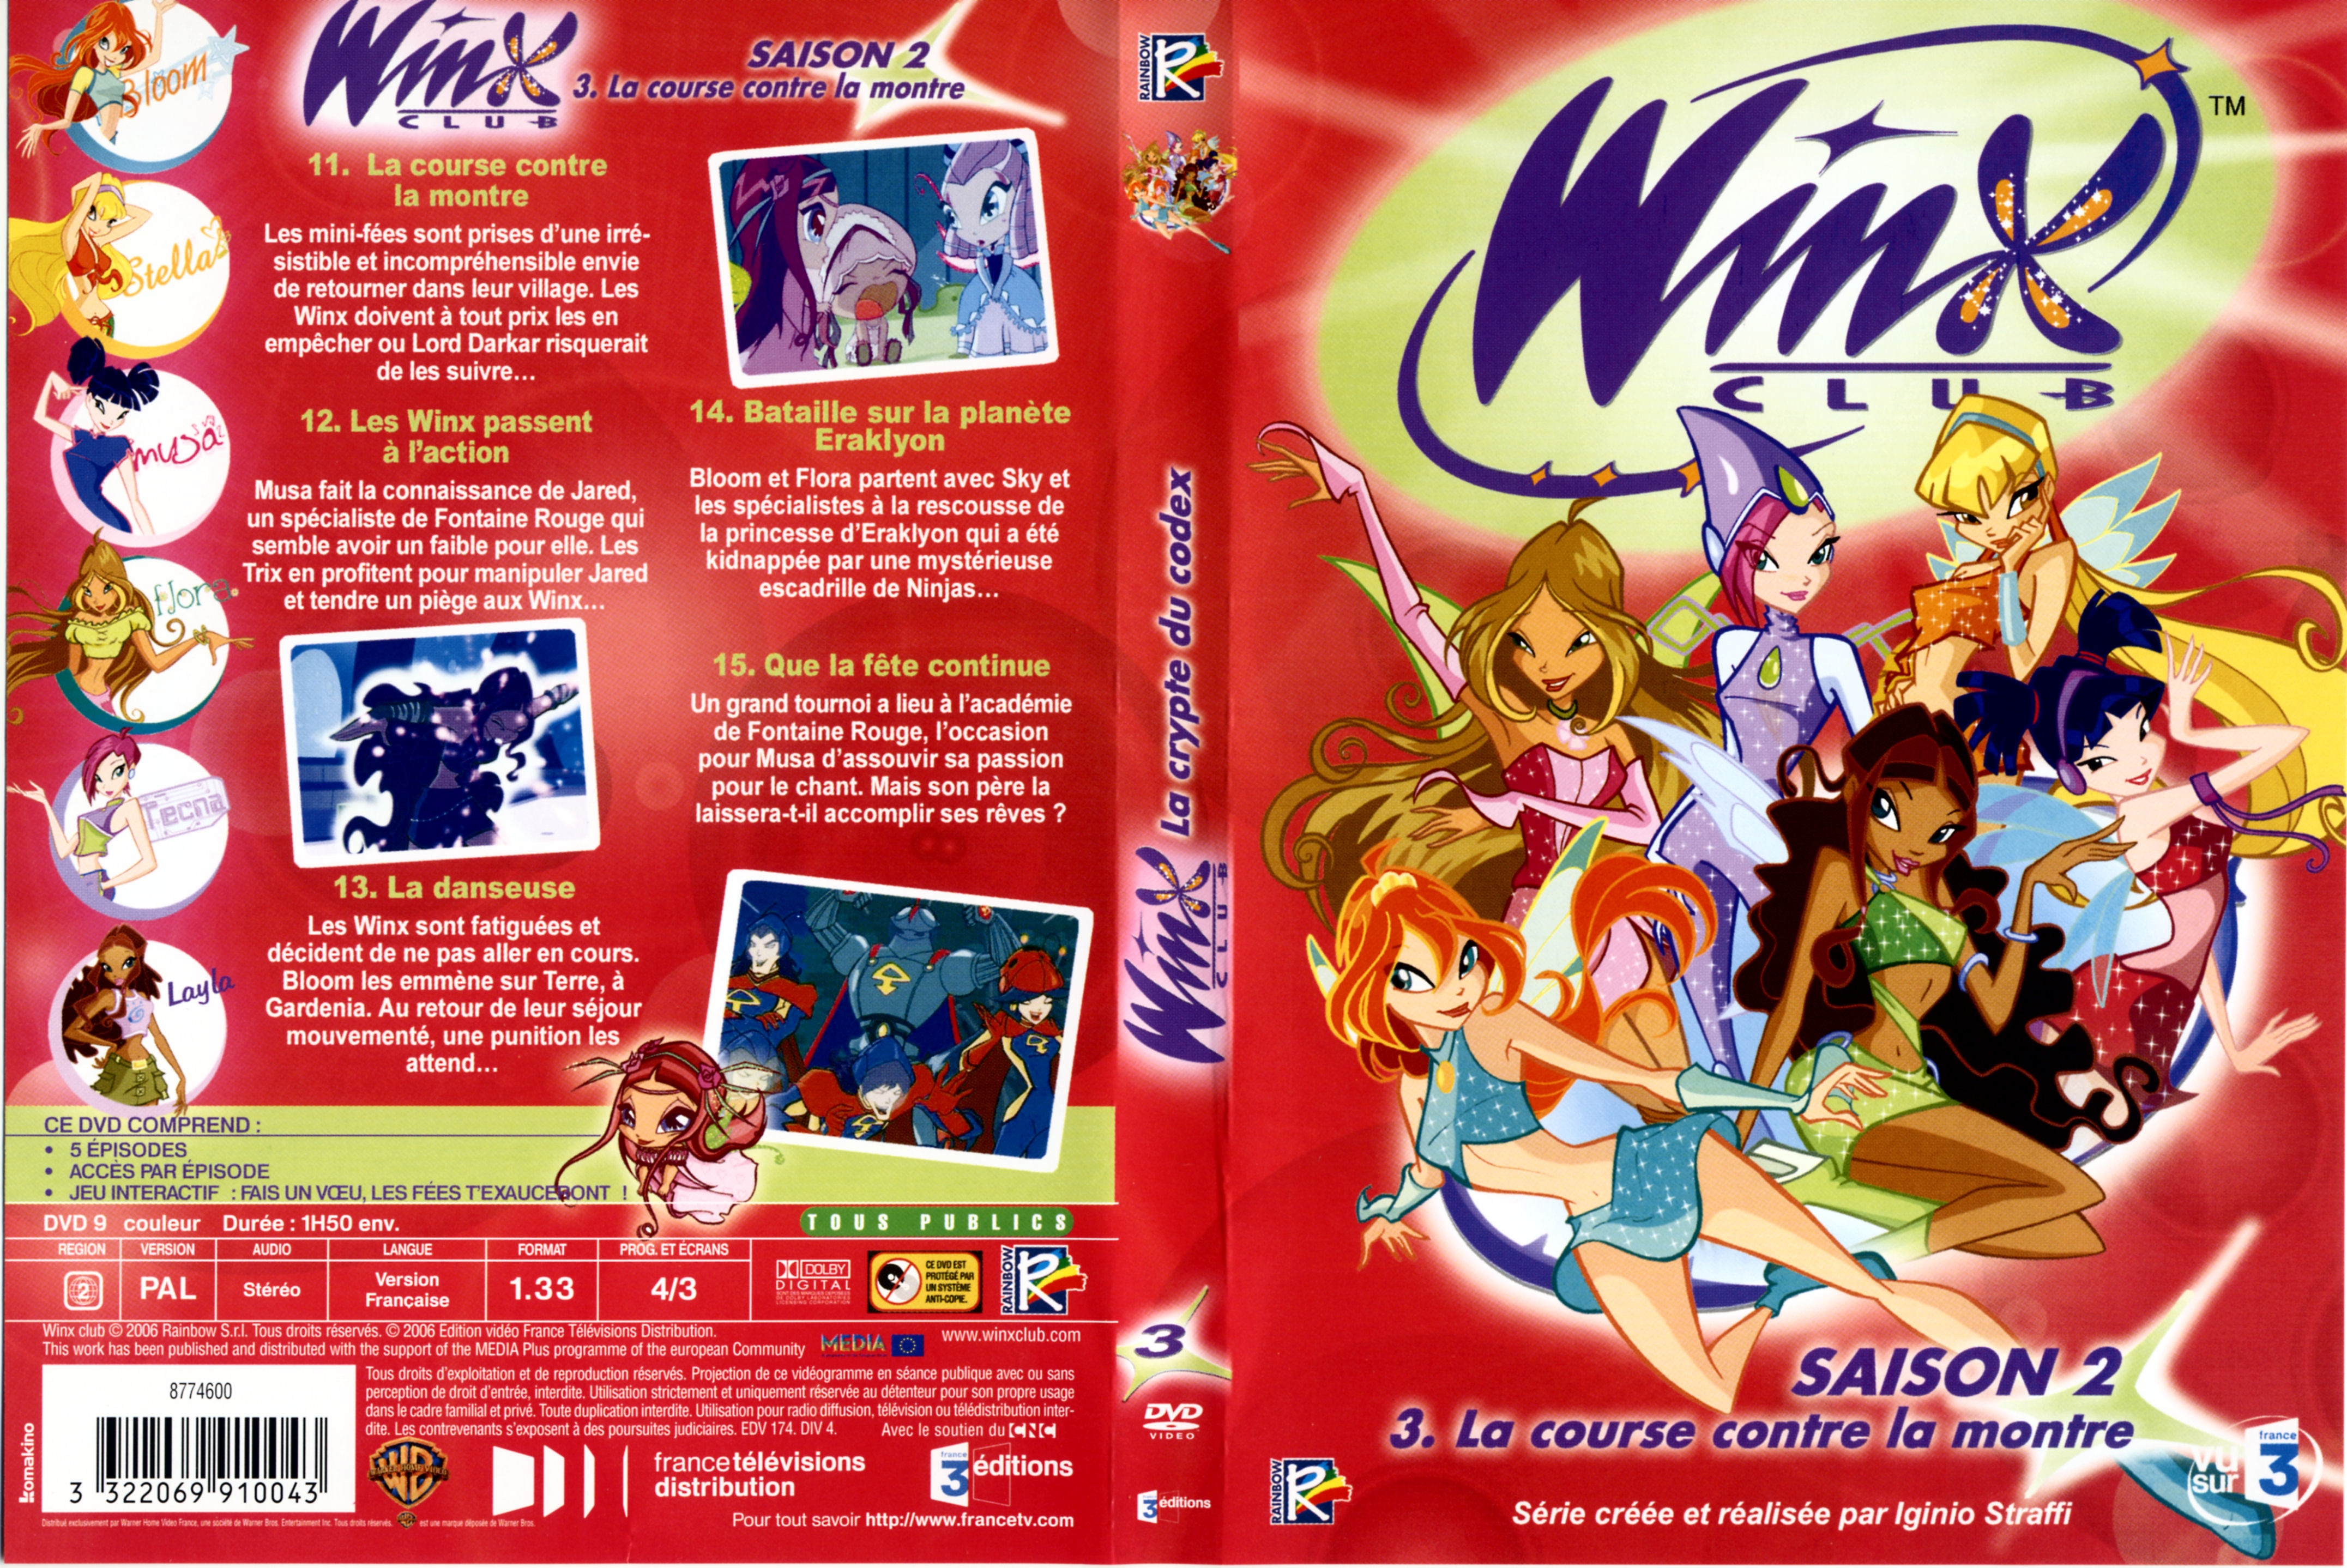 Jaquette DVD Winx club saison 2 vol 3